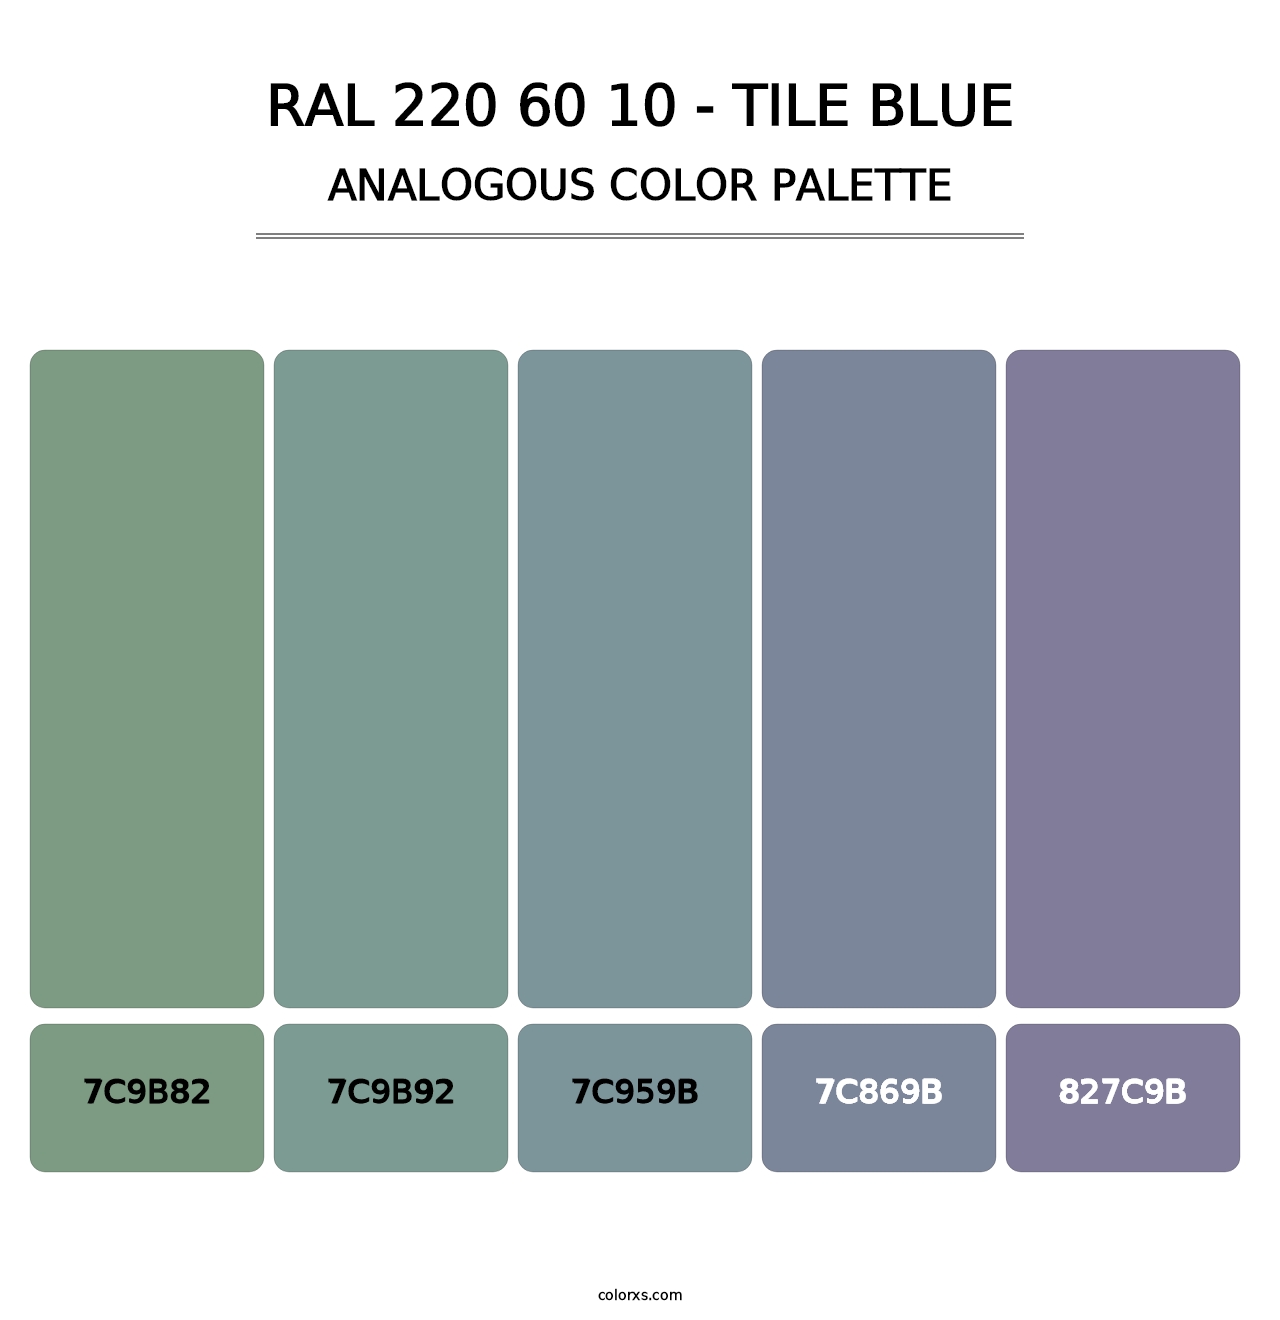 RAL 220 60 10 - Tile Blue - Analogous Color Palette